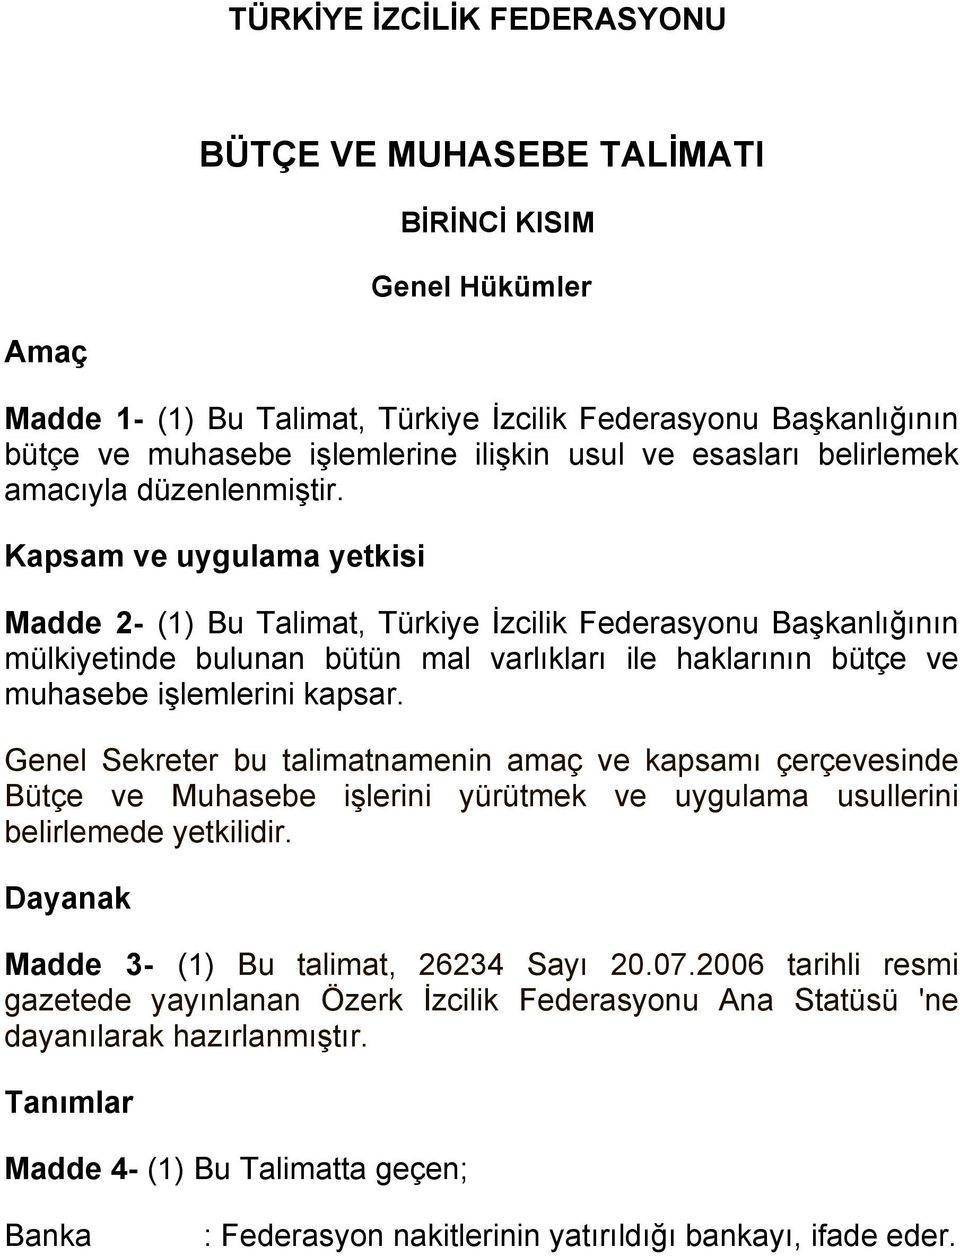 Kapsam ve uygulama yetkisi Madde 2- (1) Bu Talimat, Türkiye İzcilik Federasyonu Başkanlığının mülkiyetinde bulunan bütün mal varlıkları ile haklarının bütçe ve muhasebe işlemlerini kapsar.